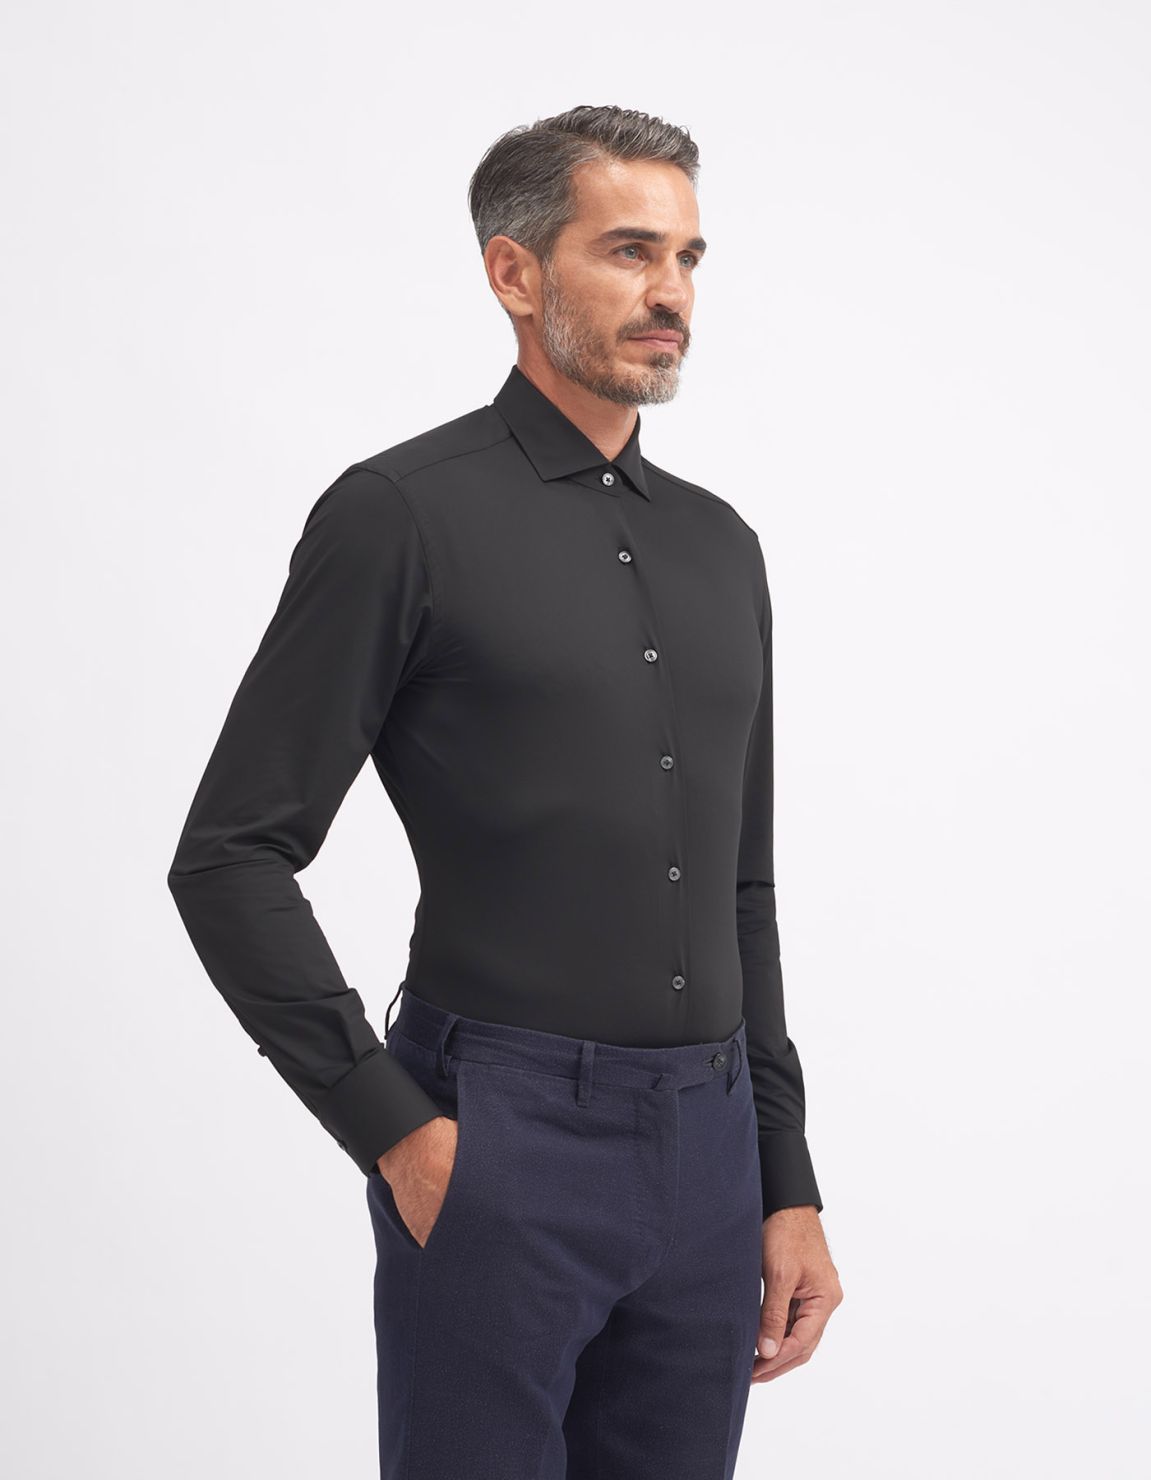 Shirt Collar small cutaway Black Twill Slim Fit 1